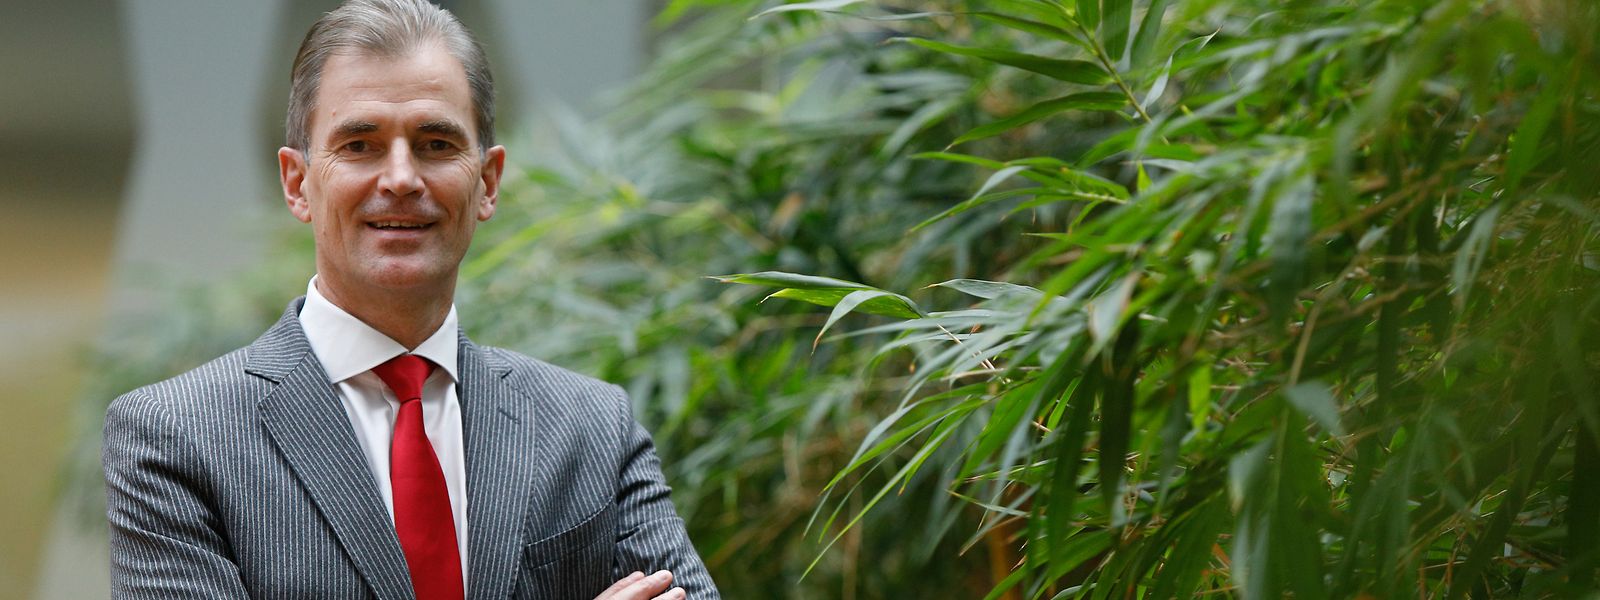 Georg Joucken, Head of Private Banking bei der Banque Raiffeisen, will Nachhaltigkeit zum Standard machen.